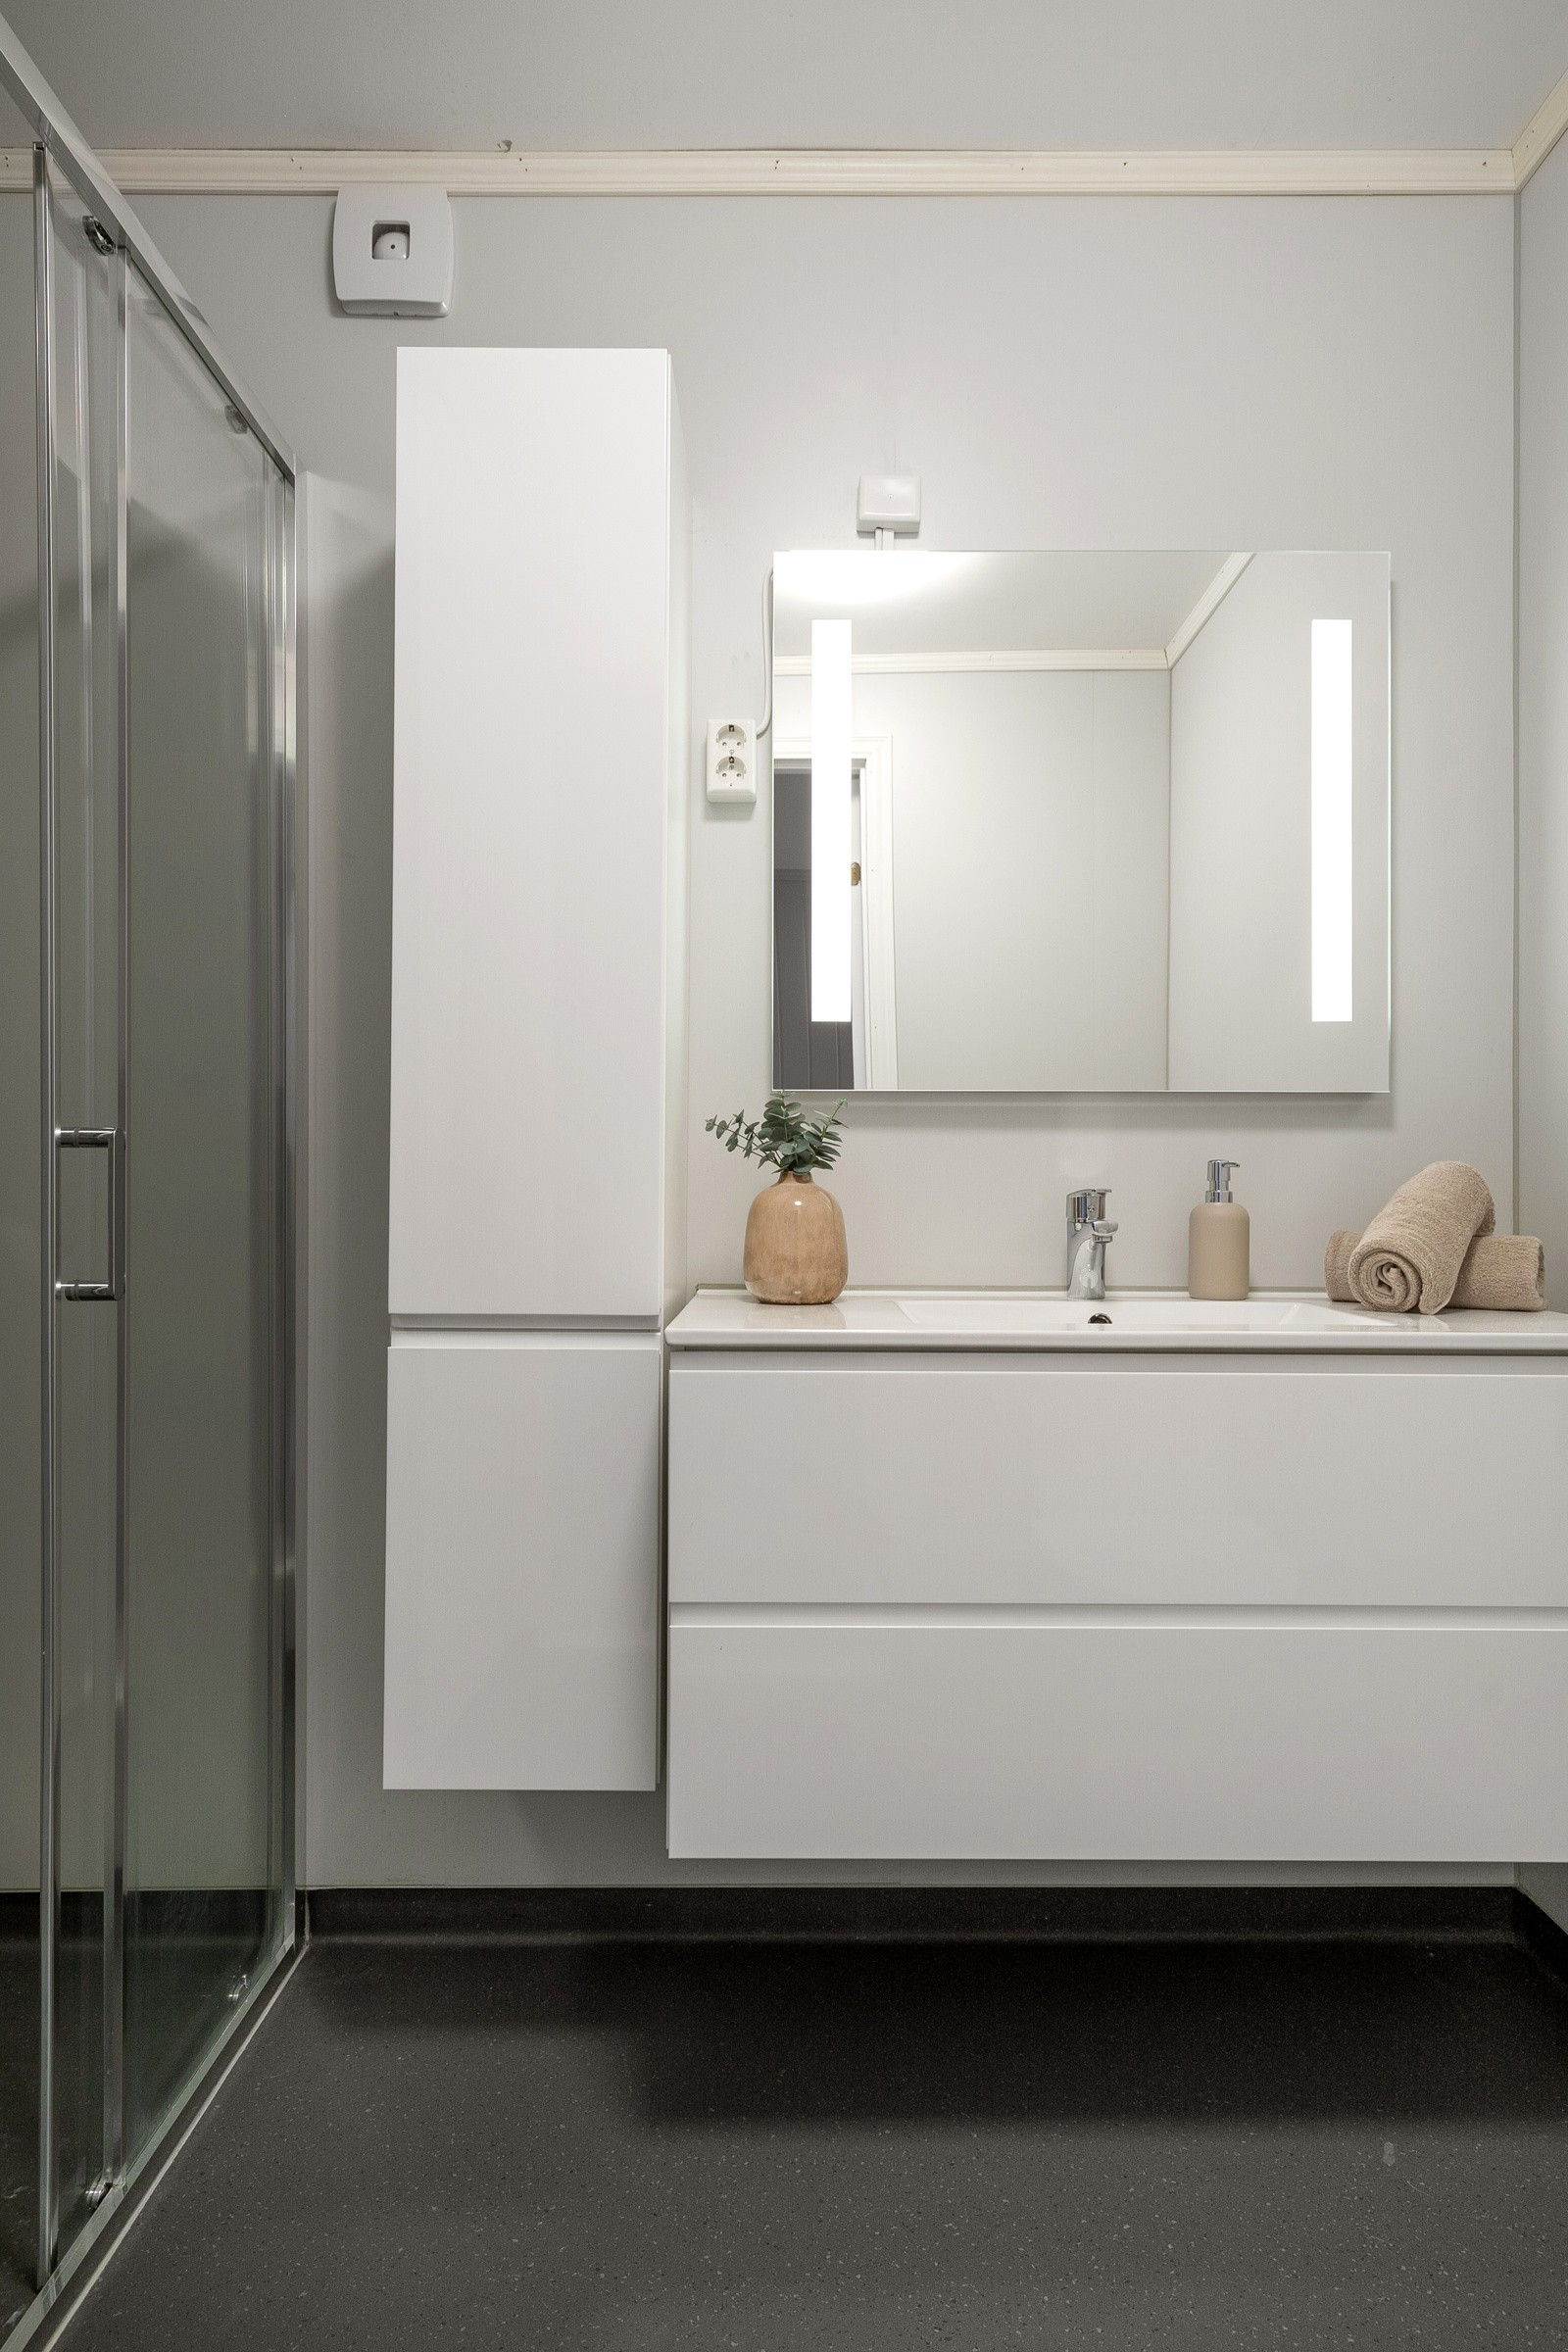 I kjeller: Bad/wc er oppgradert i 2022 med nytt gulv, vegger og sanitærutstyr. Badet har gulvvarme, wc, baderomsinnredning med servant, speil og dusj.